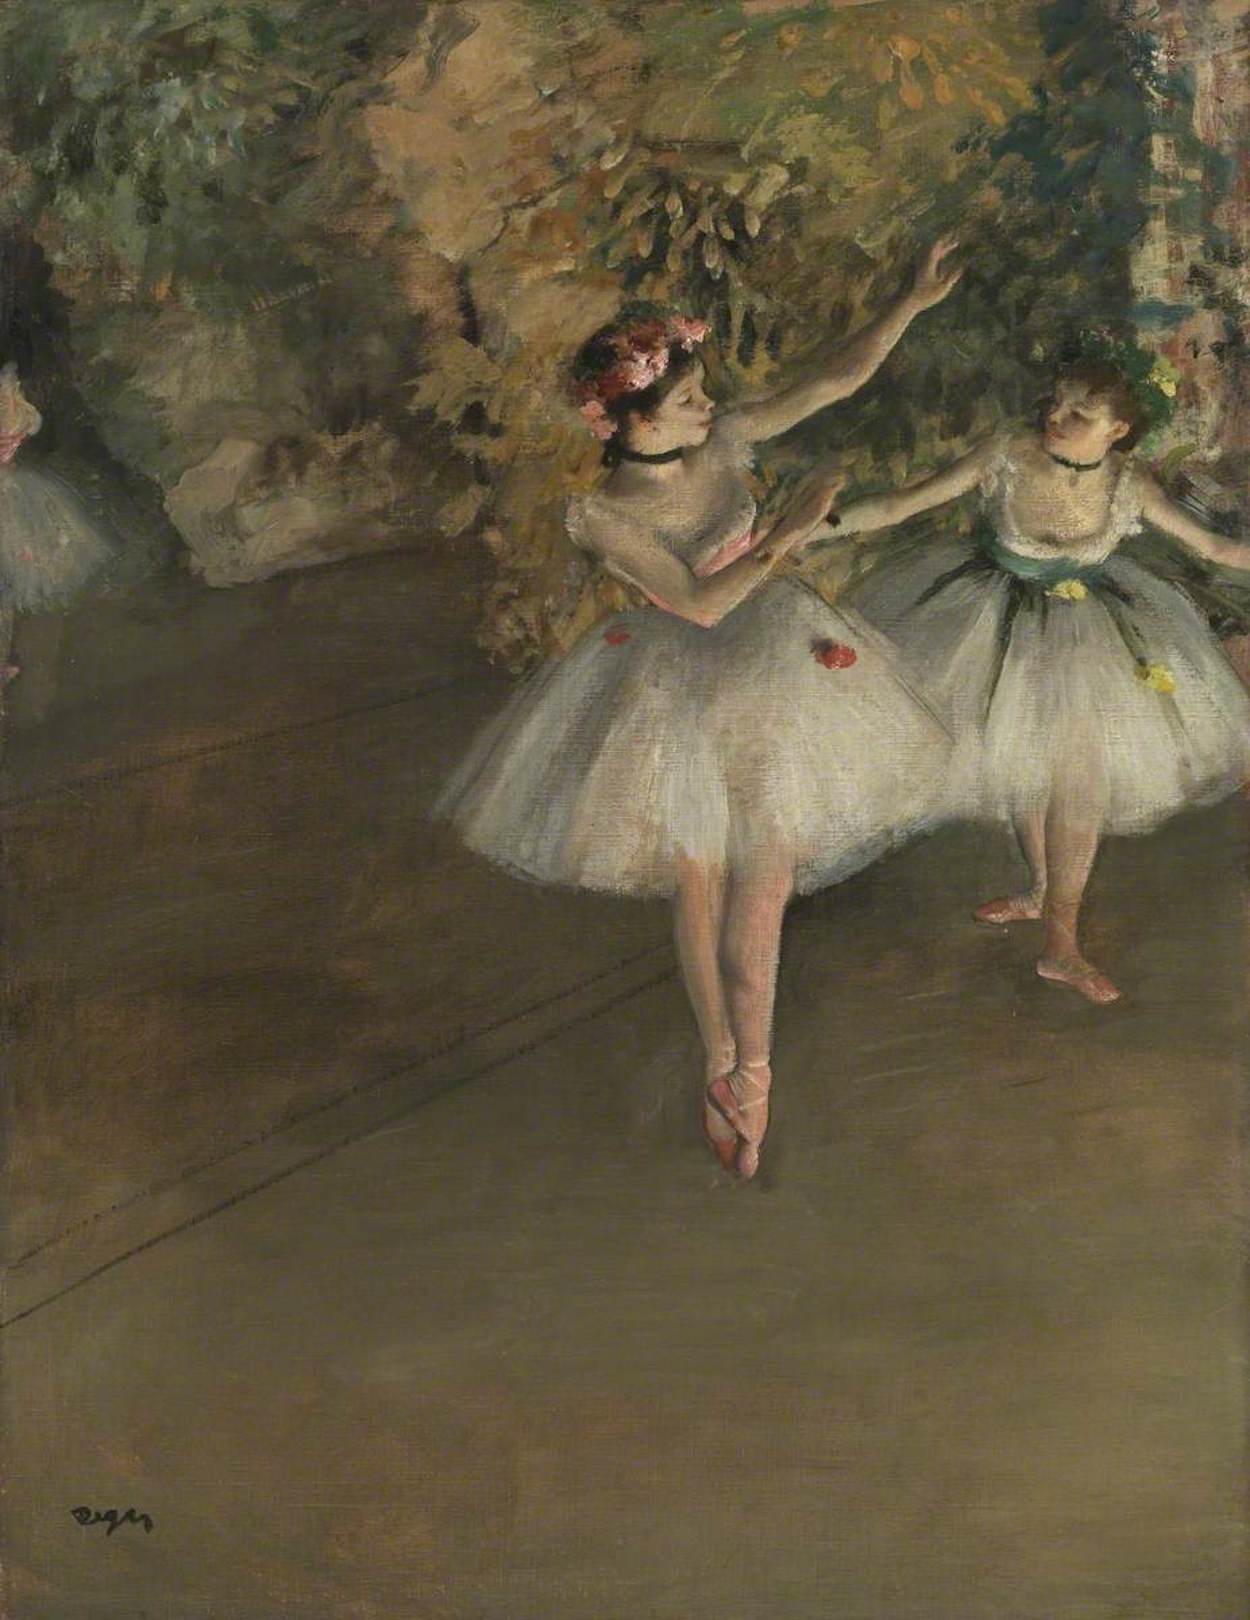 舞台上の二人の踊り子 by Edgar Degas - 1874年 - 61.5 × 46 cm 